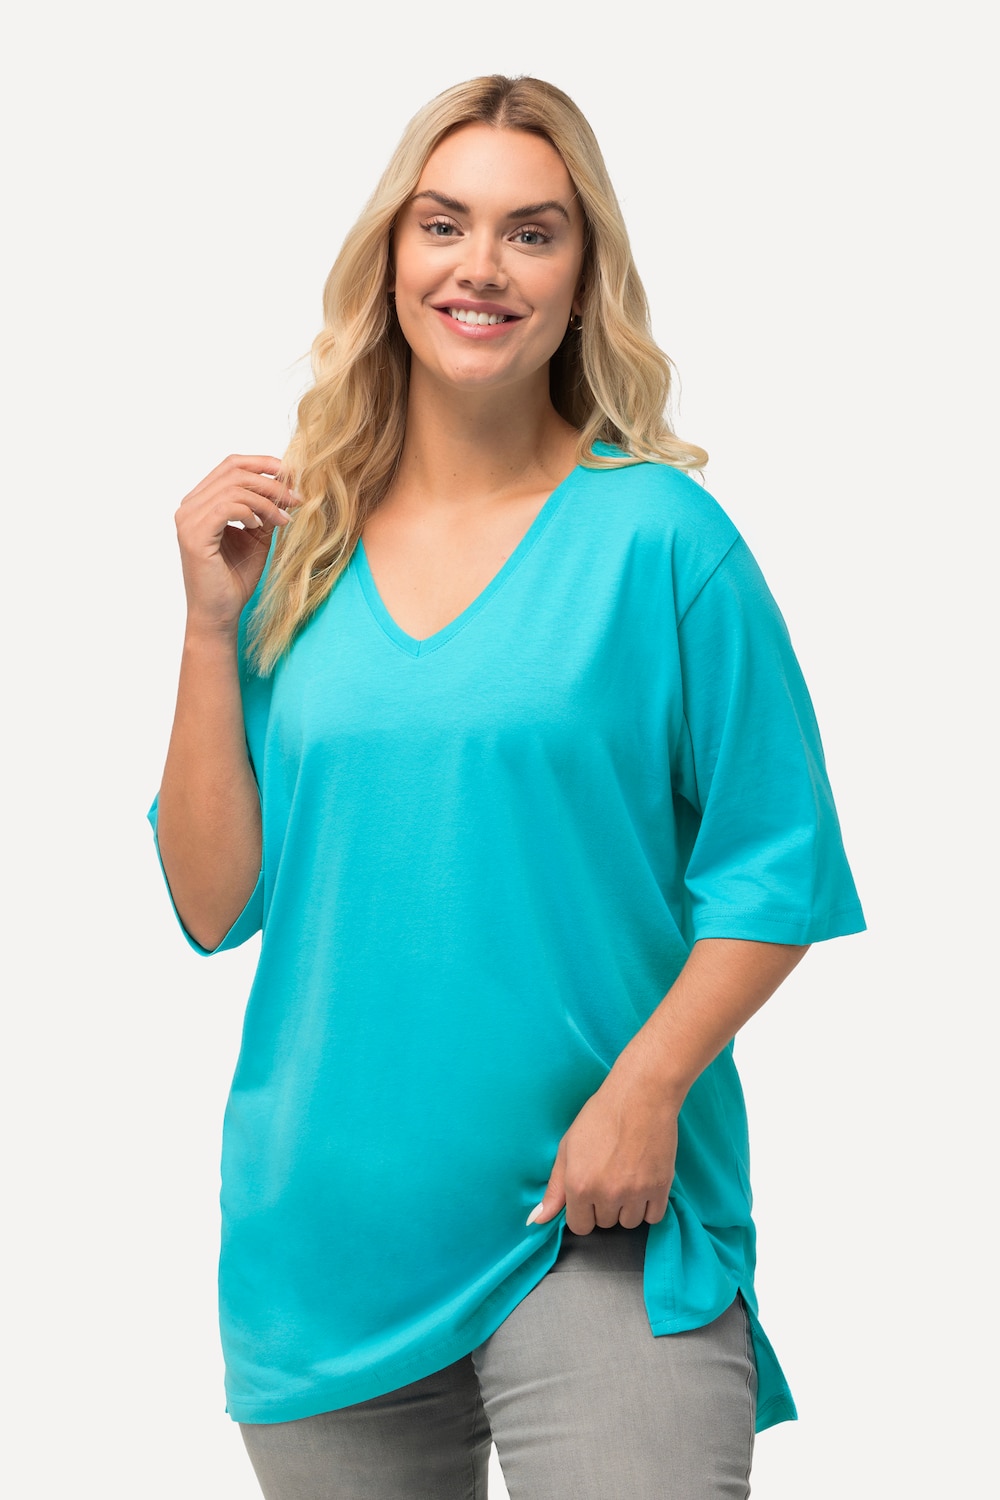 Grote Maten T-shirt, Dames, turquoise, Maat: 42/44, Katoen, Ulla Popken